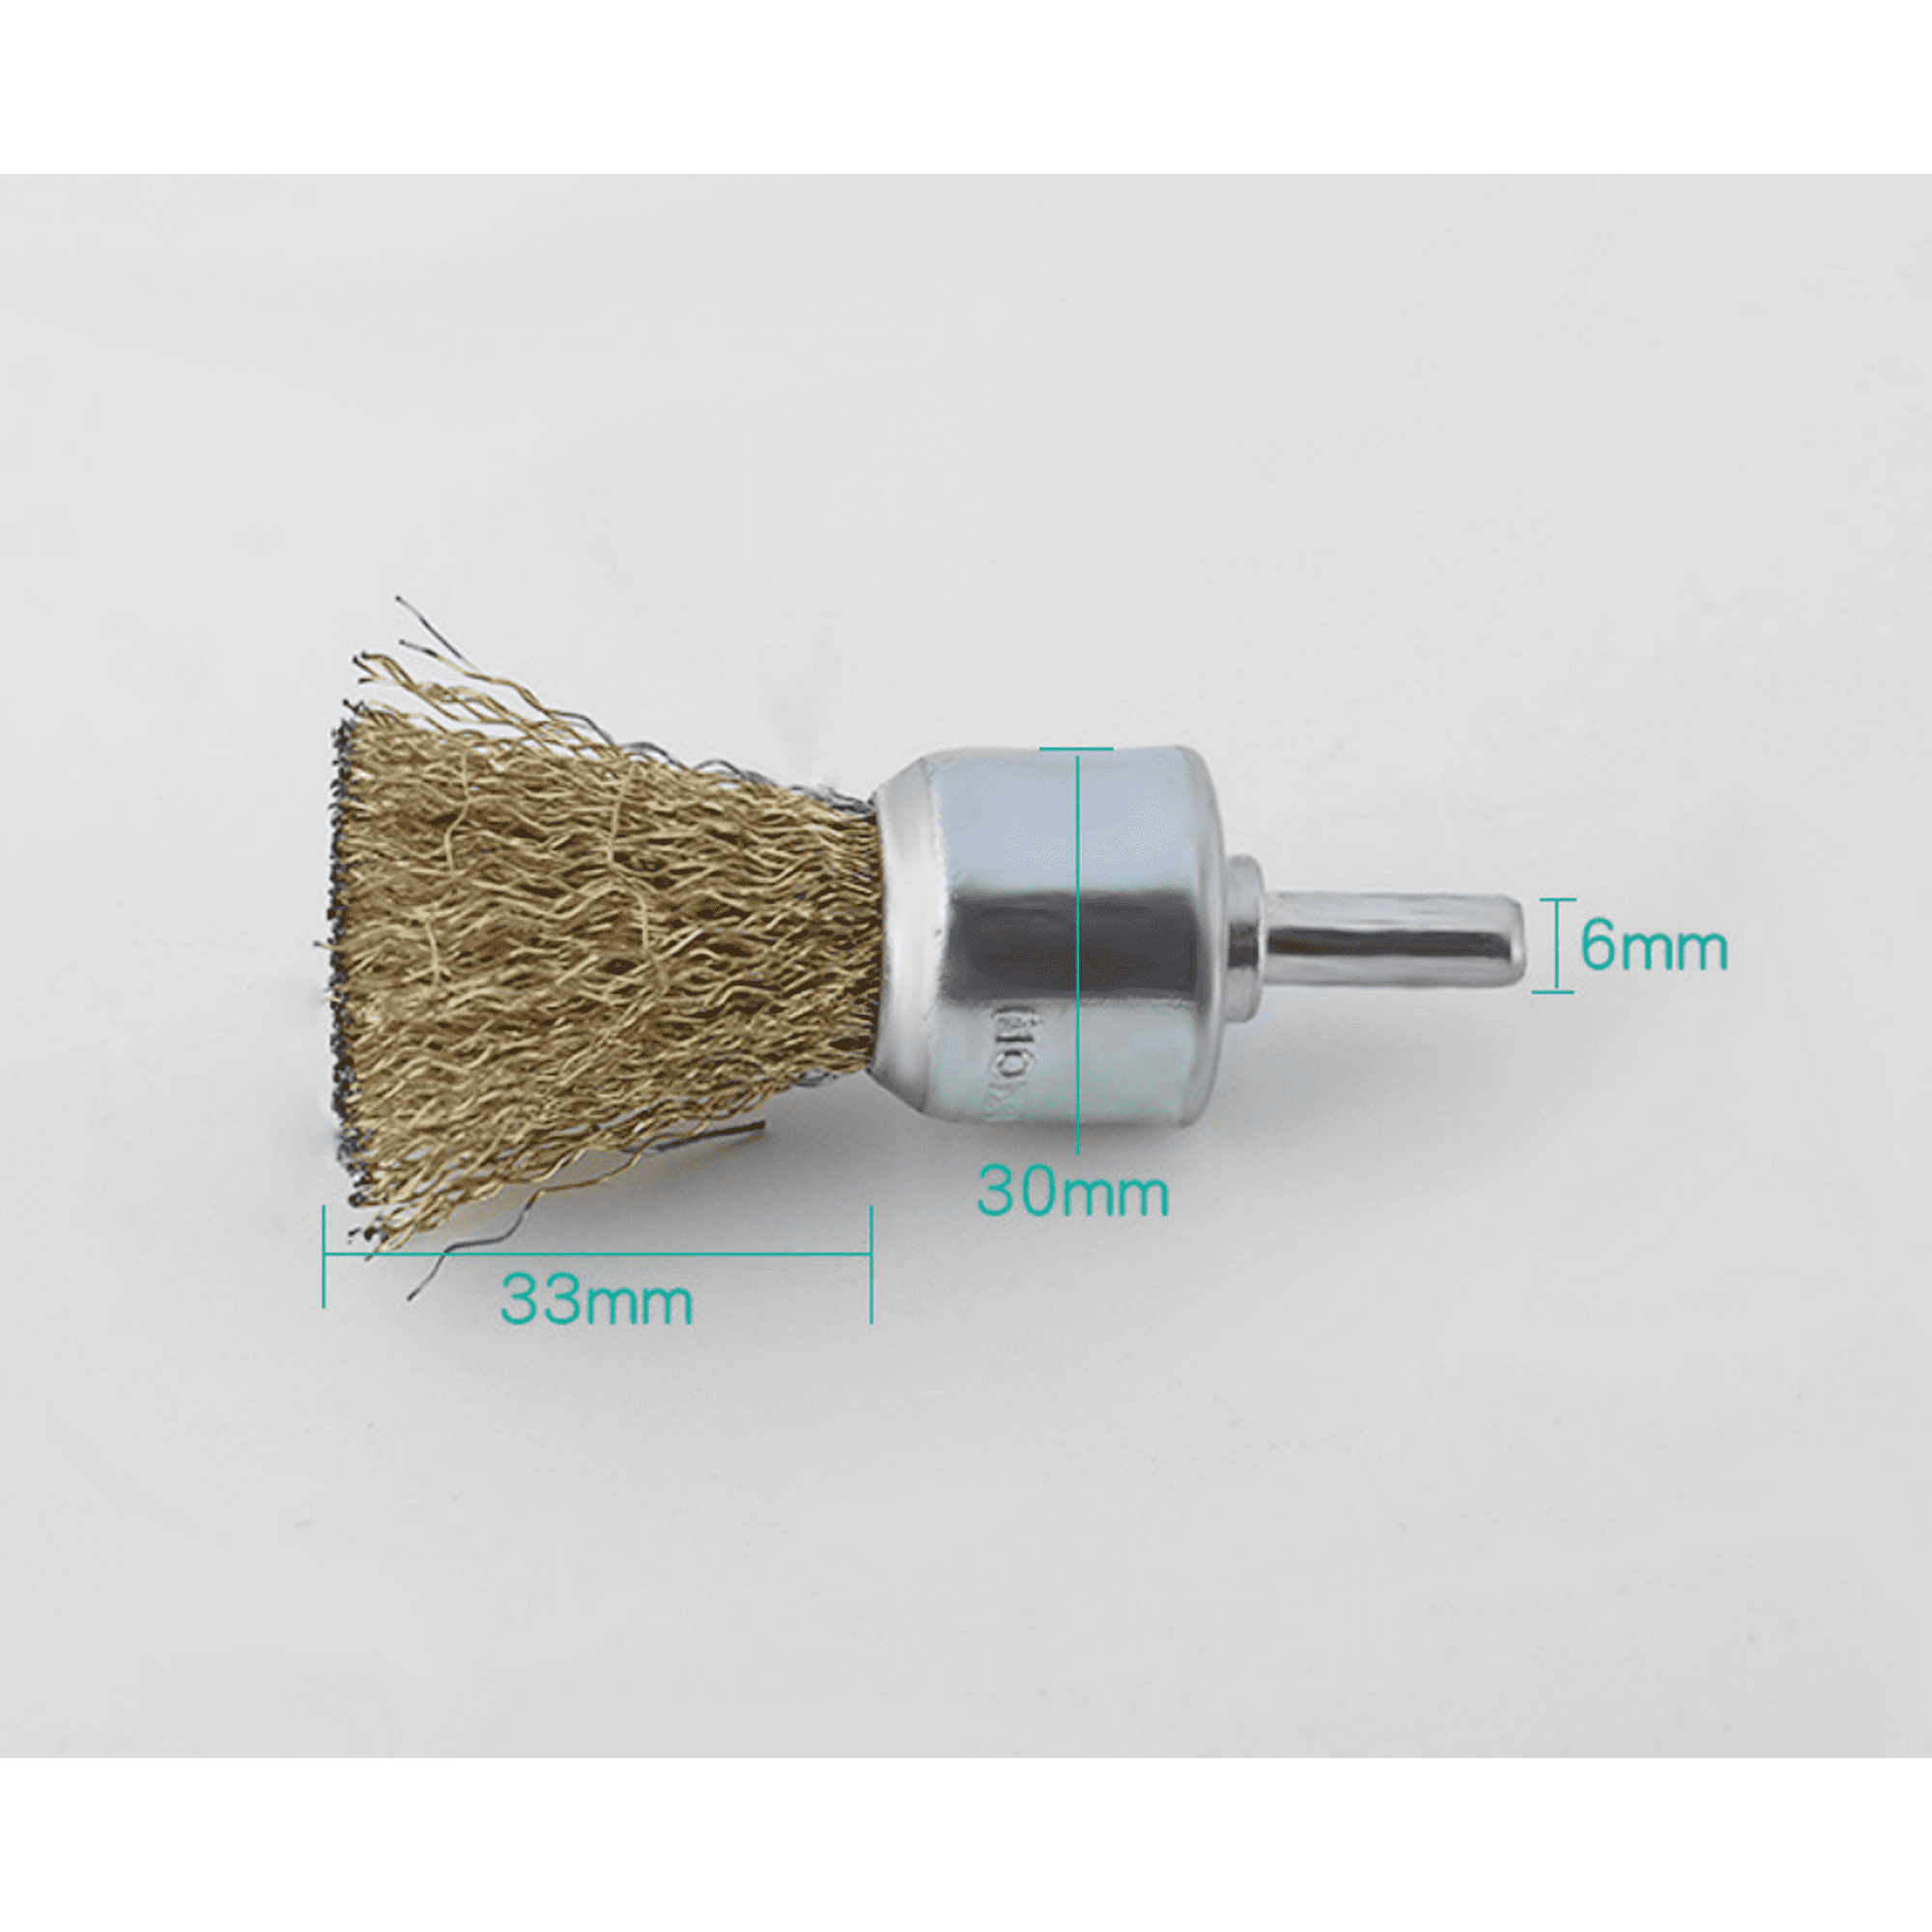 Tradineur - Cepillo de alambre - Apto para taladro - Cepillo de hierro -  Ideal para eliminar óxido, corrosiones de las superfici